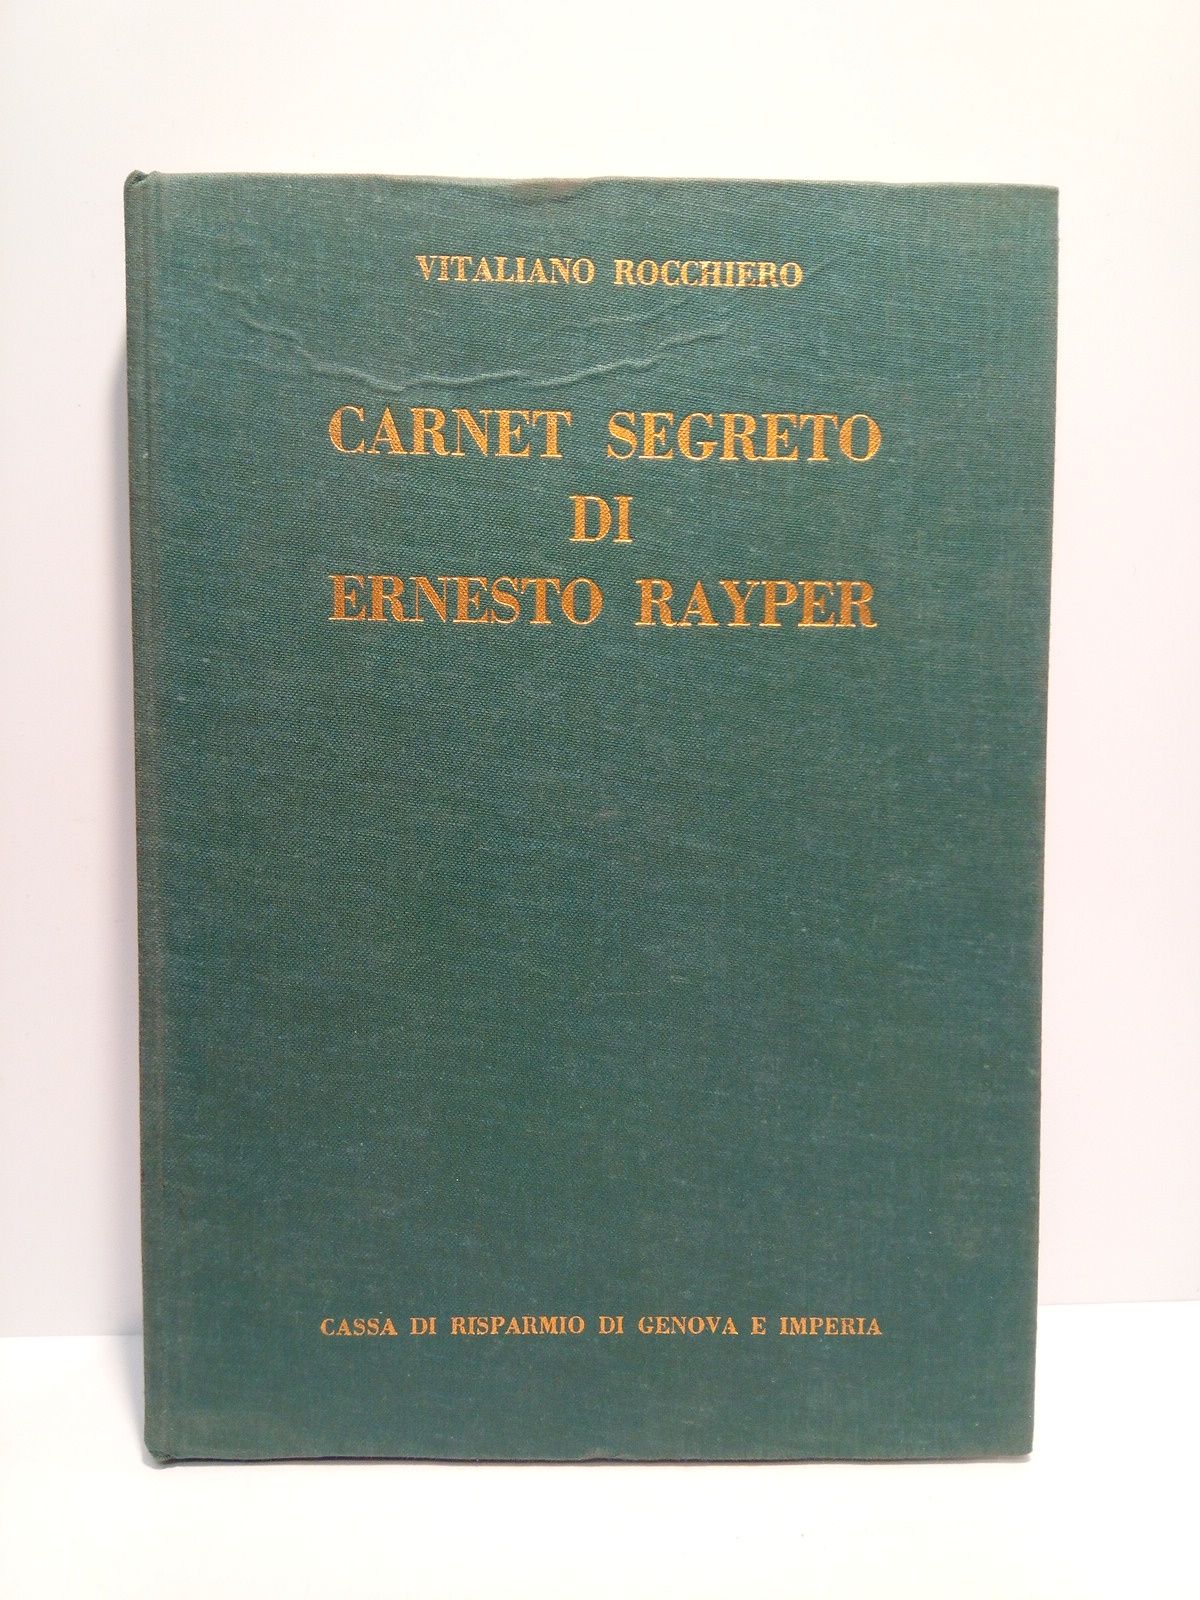 ROCCHIERO, Vitaliano - Carnet segreto di Ernesto Rayper